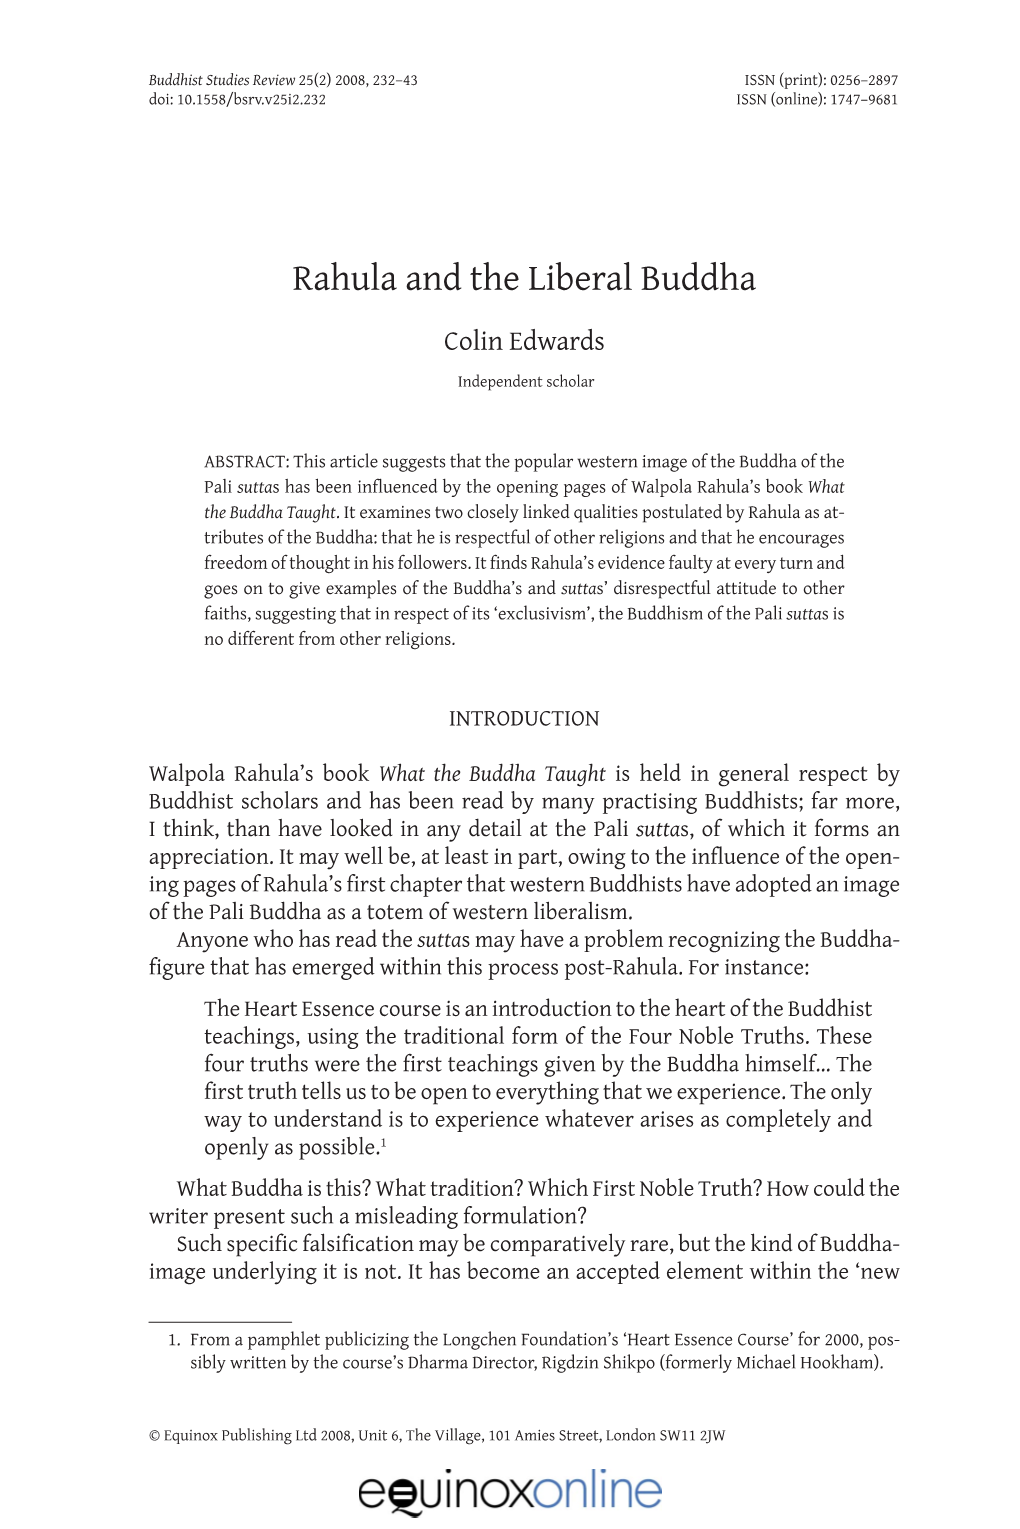 Rahula and the Liberal Buddha